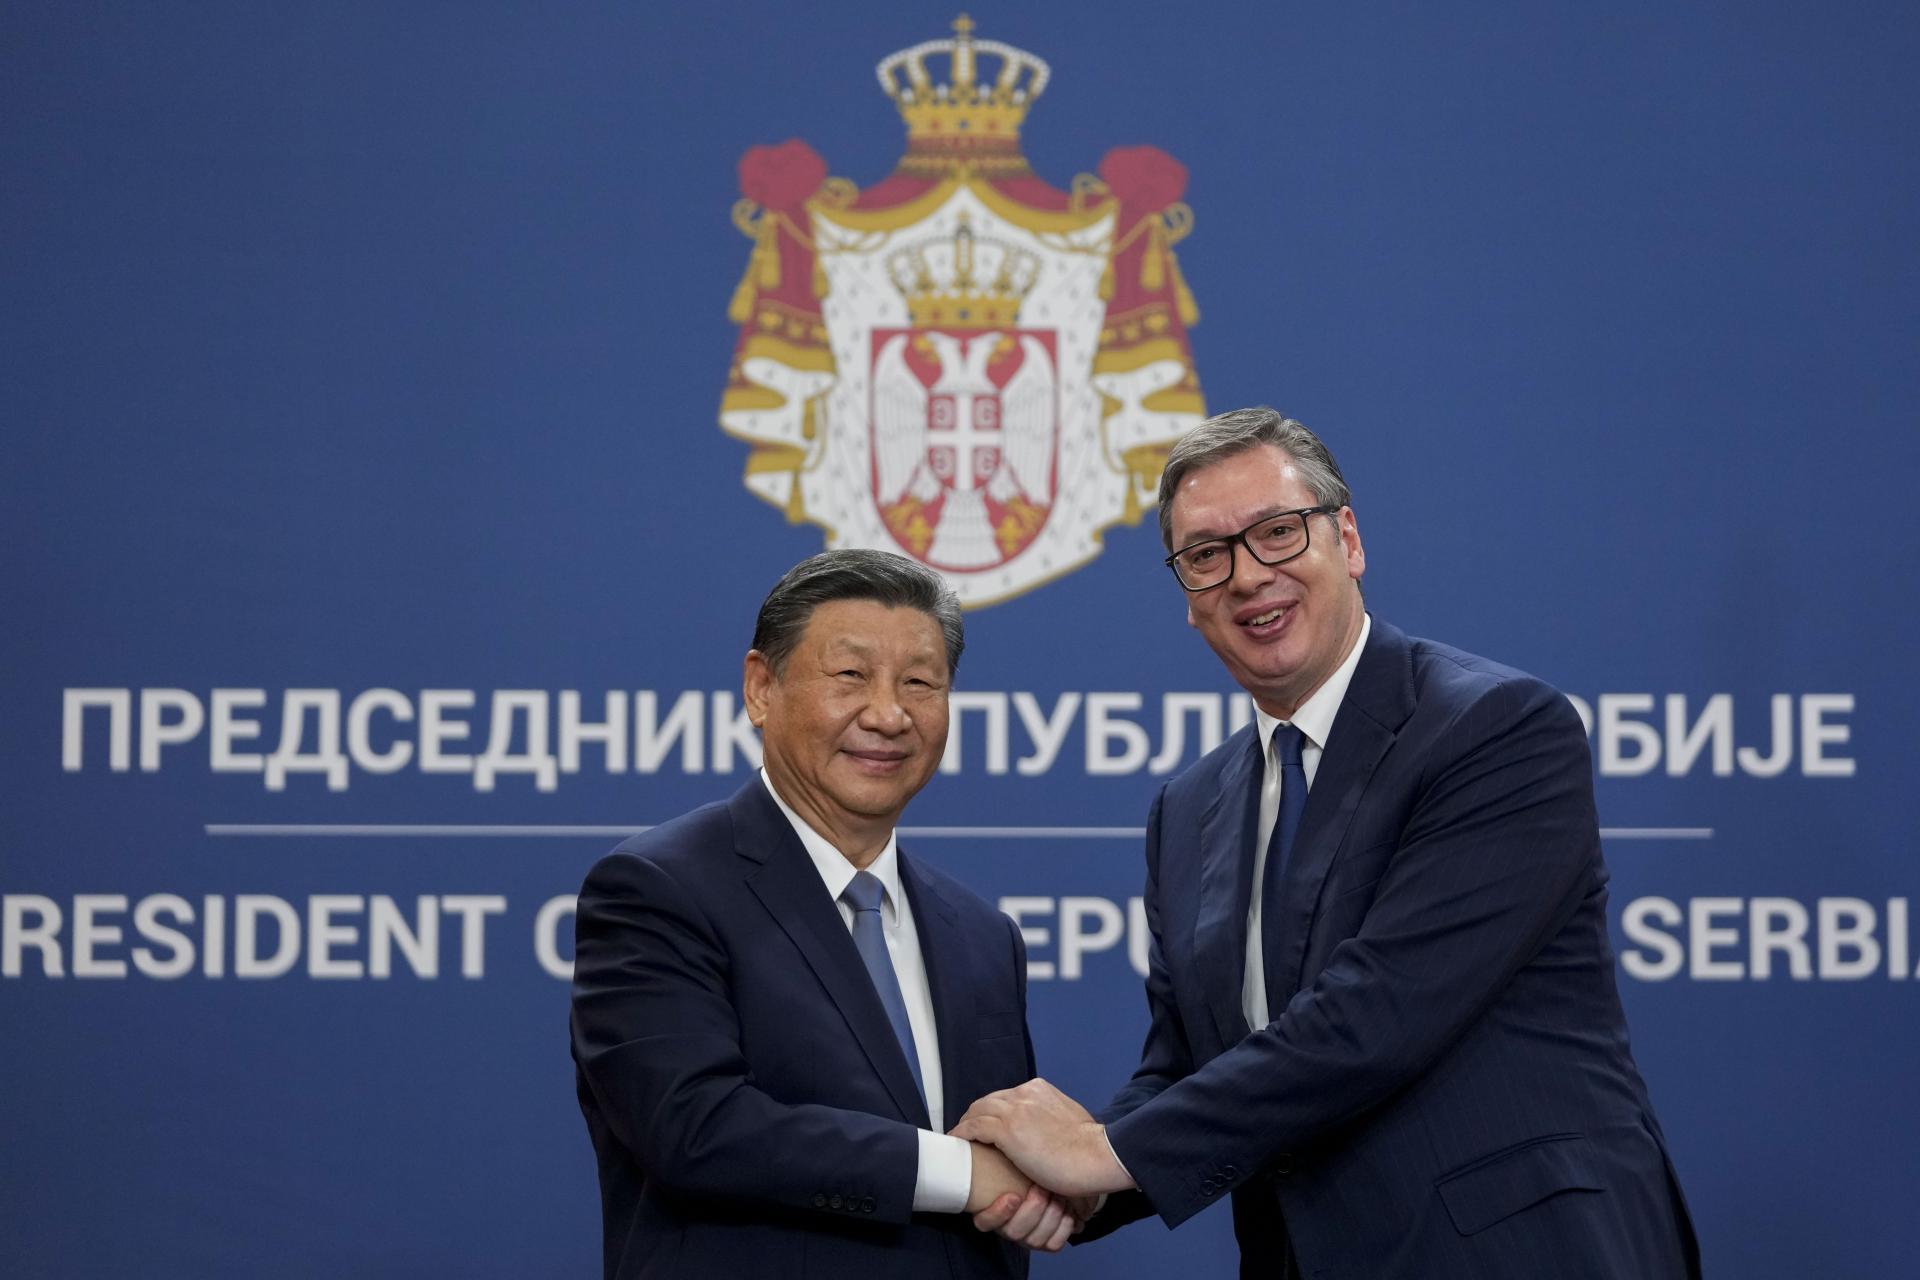 Srbsko podpísalo s Čínou dohodu o spolupráci v oblasti energetiky. Súčasťou je miliardová investícia